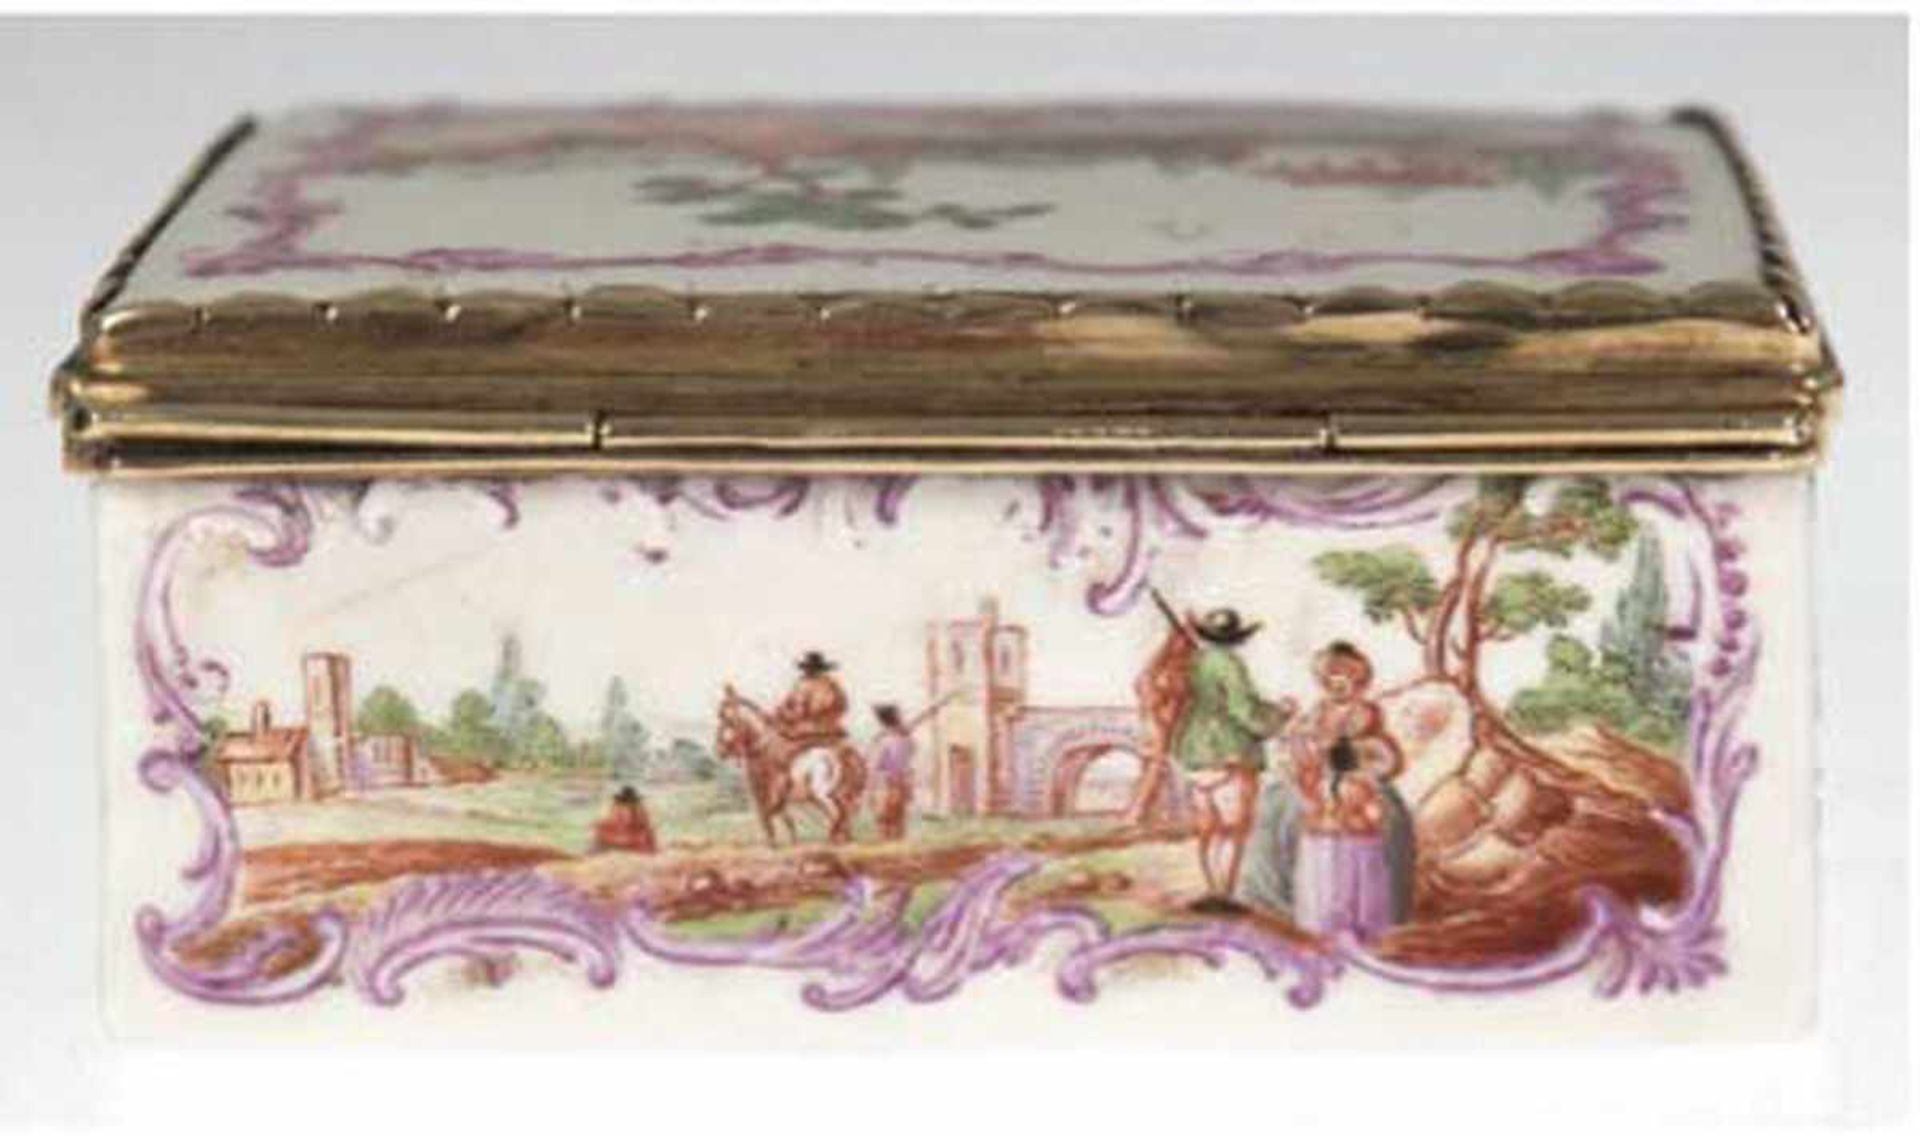 Deckeldose, 18. Jh., Porzellan, polychrome Malerei, umlaufende Landschaftsdarstellung mit - Bild 2 aus 5